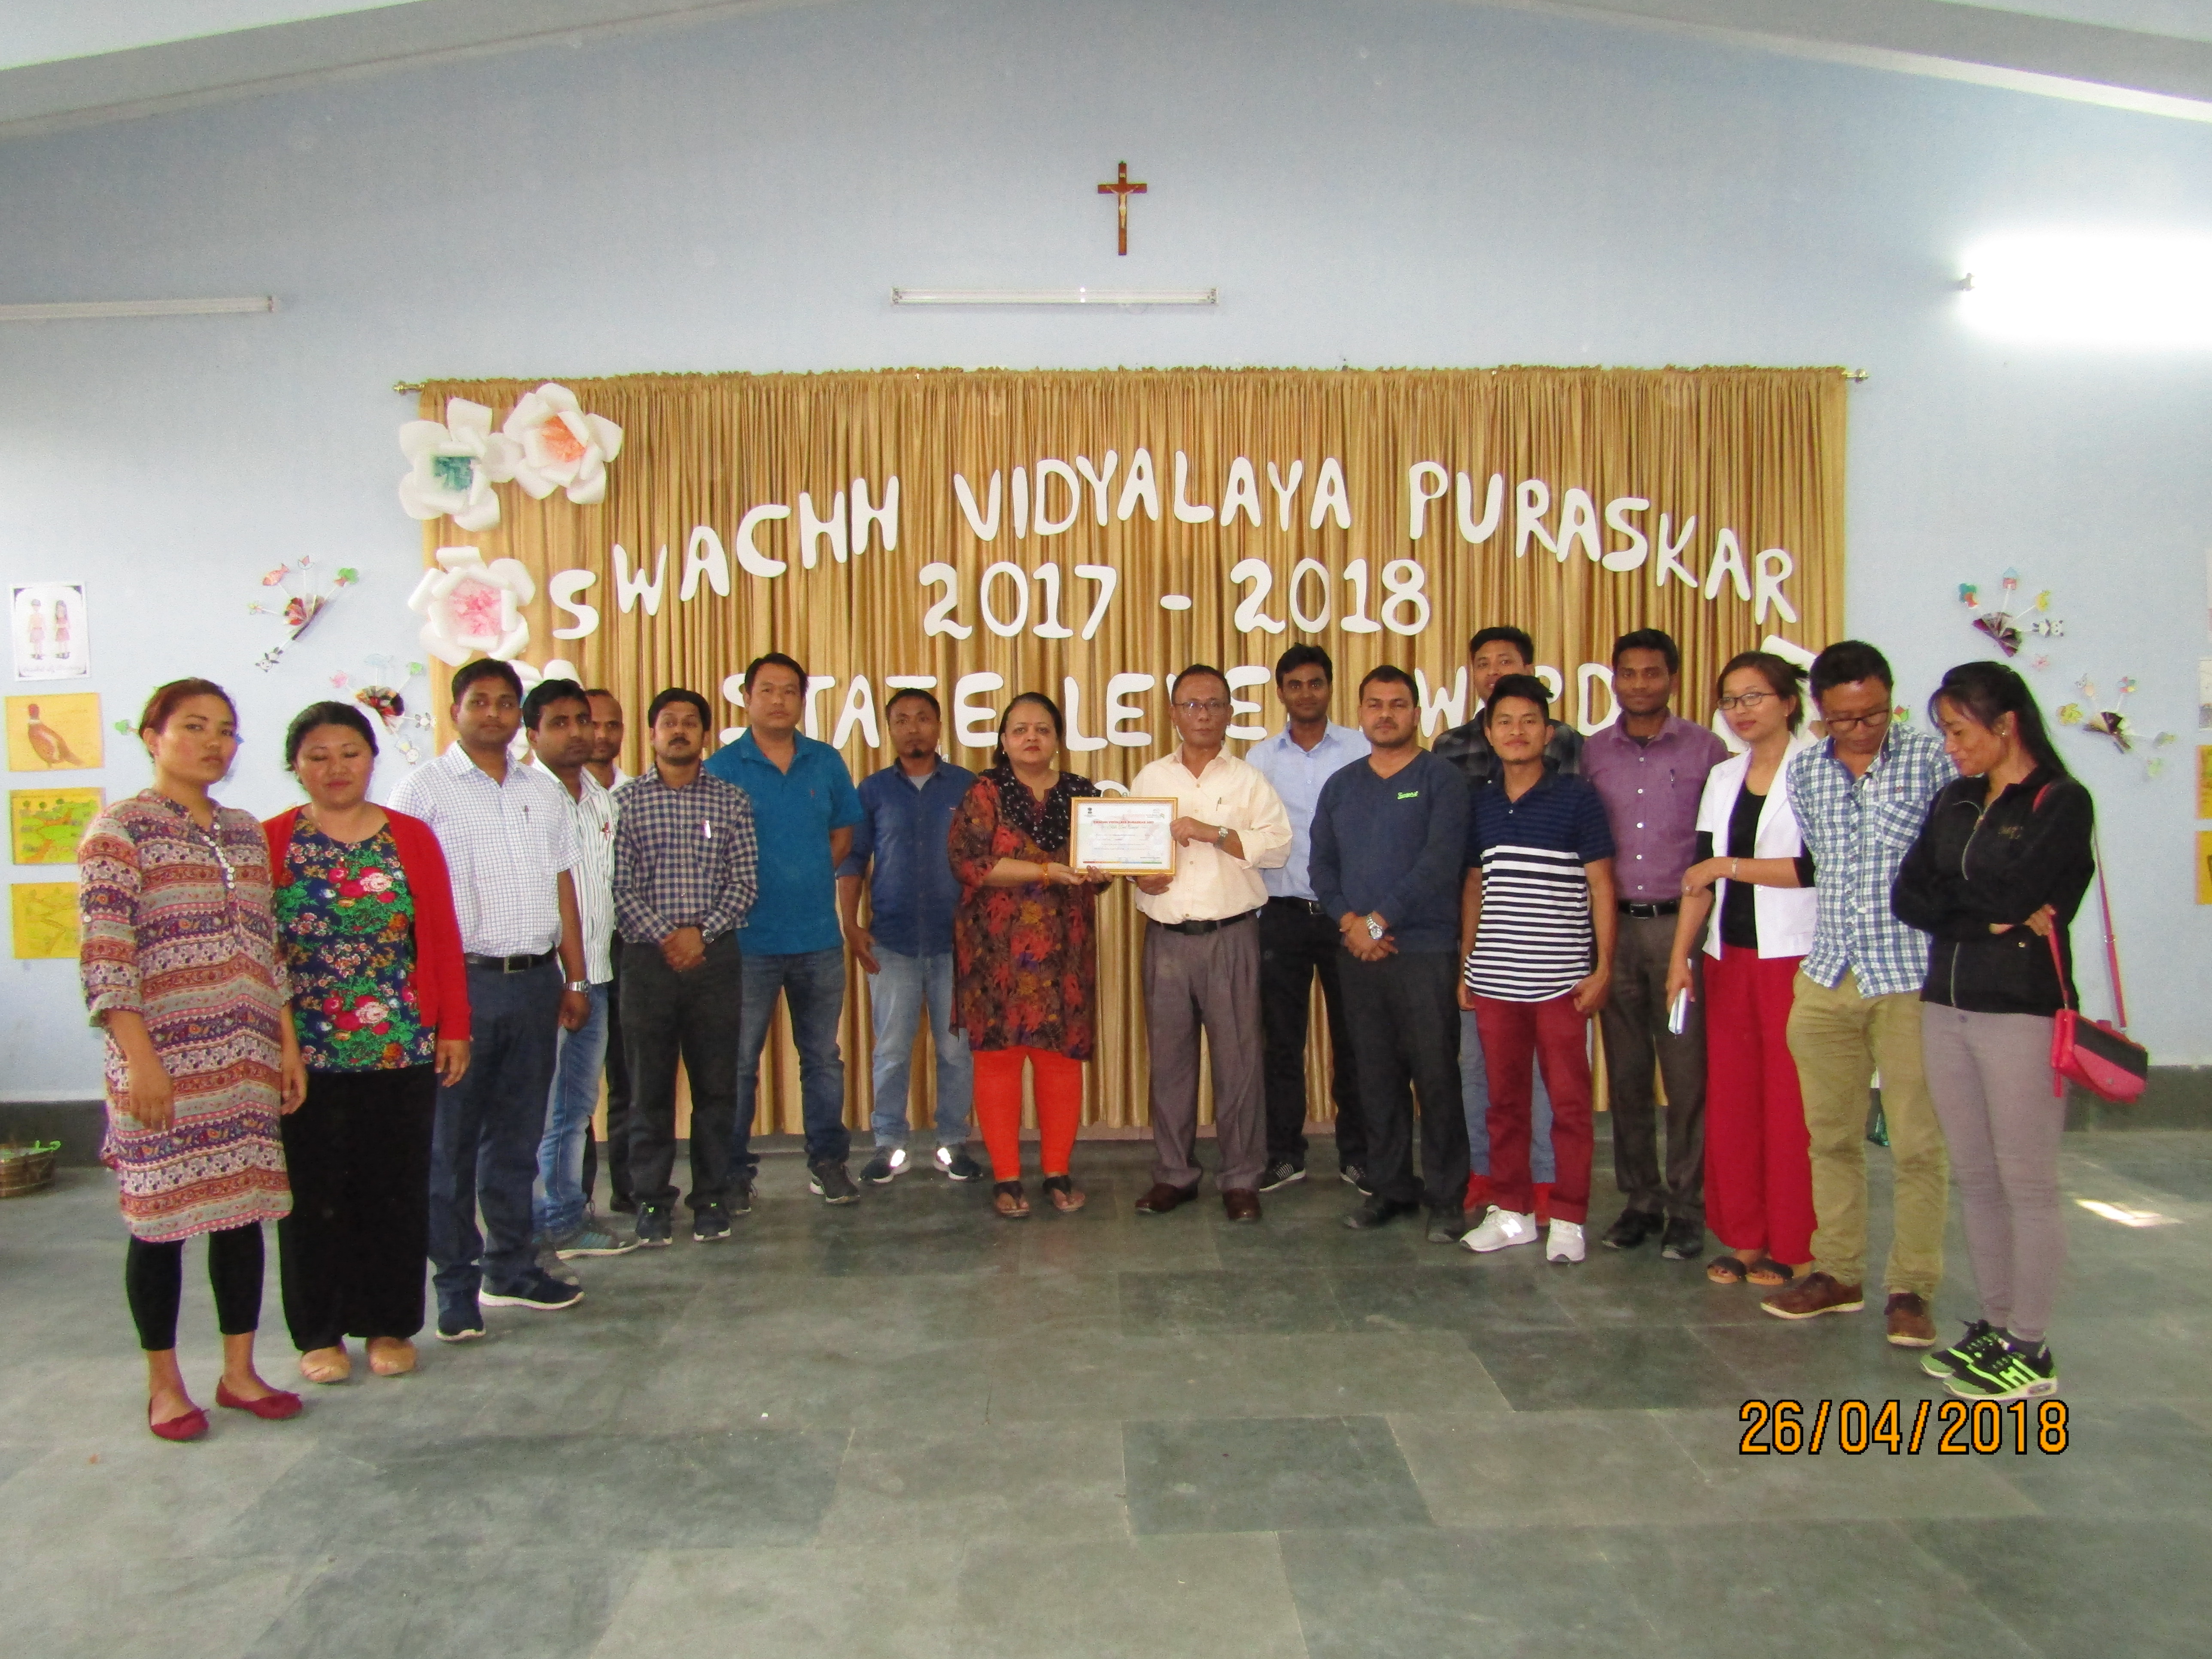   स्वच्छ विद्यालय  पुरस्कार - २०१७ -१८ 